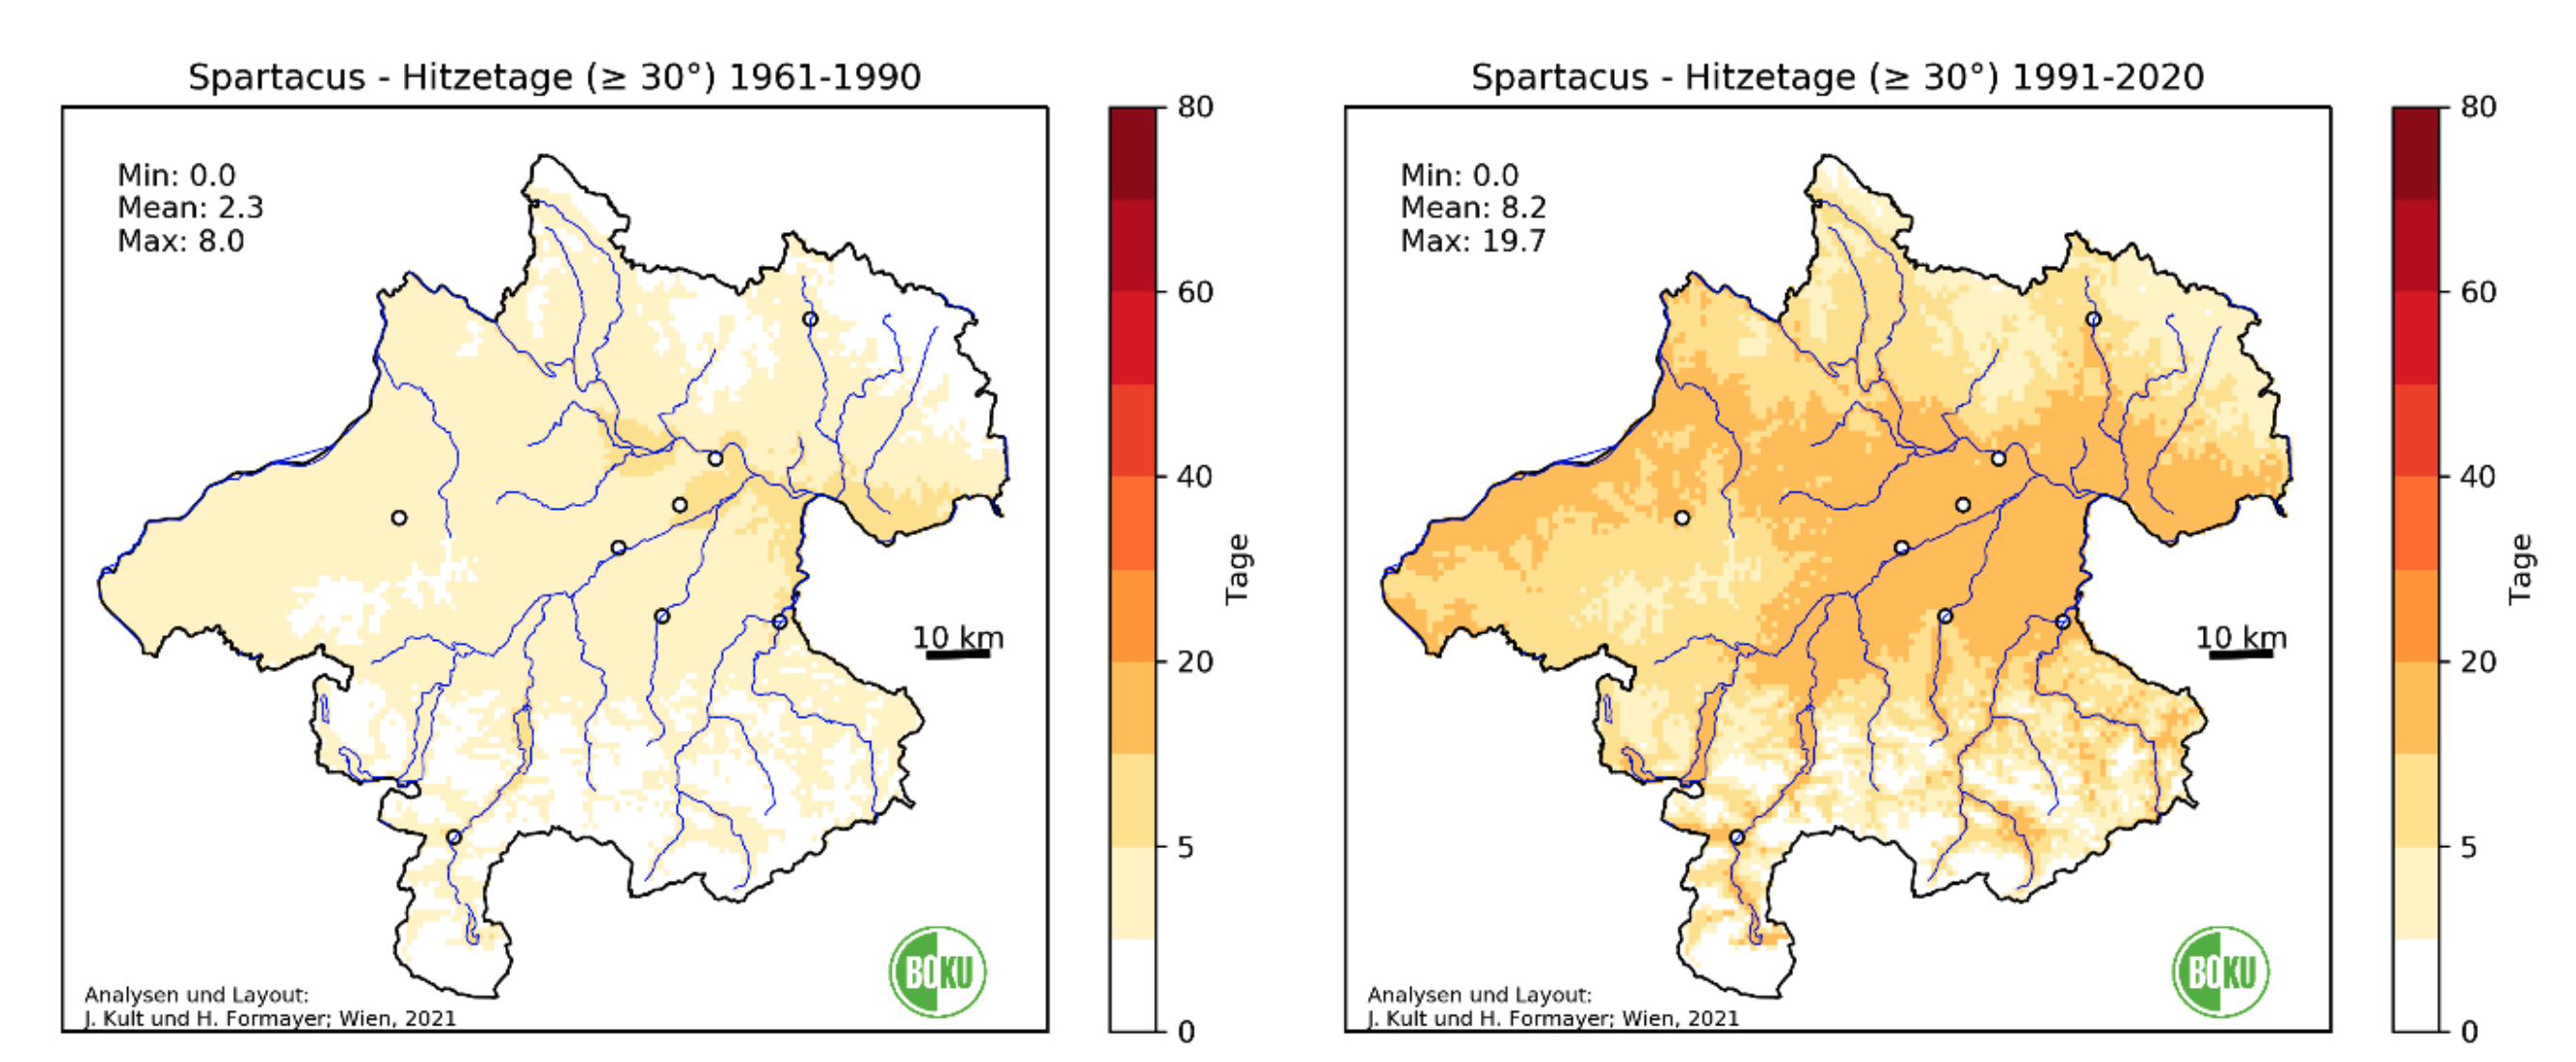 Eine Grafik, die zwei Oberösterreich Karten für die Perioden 1961-1990 sowie 1991-2020 und jeweils eine Temperaturskala zeigt. Die Karte des Zeitraums 1991-2020 zeigt eine deutliche Zunahme der Hitzetage.